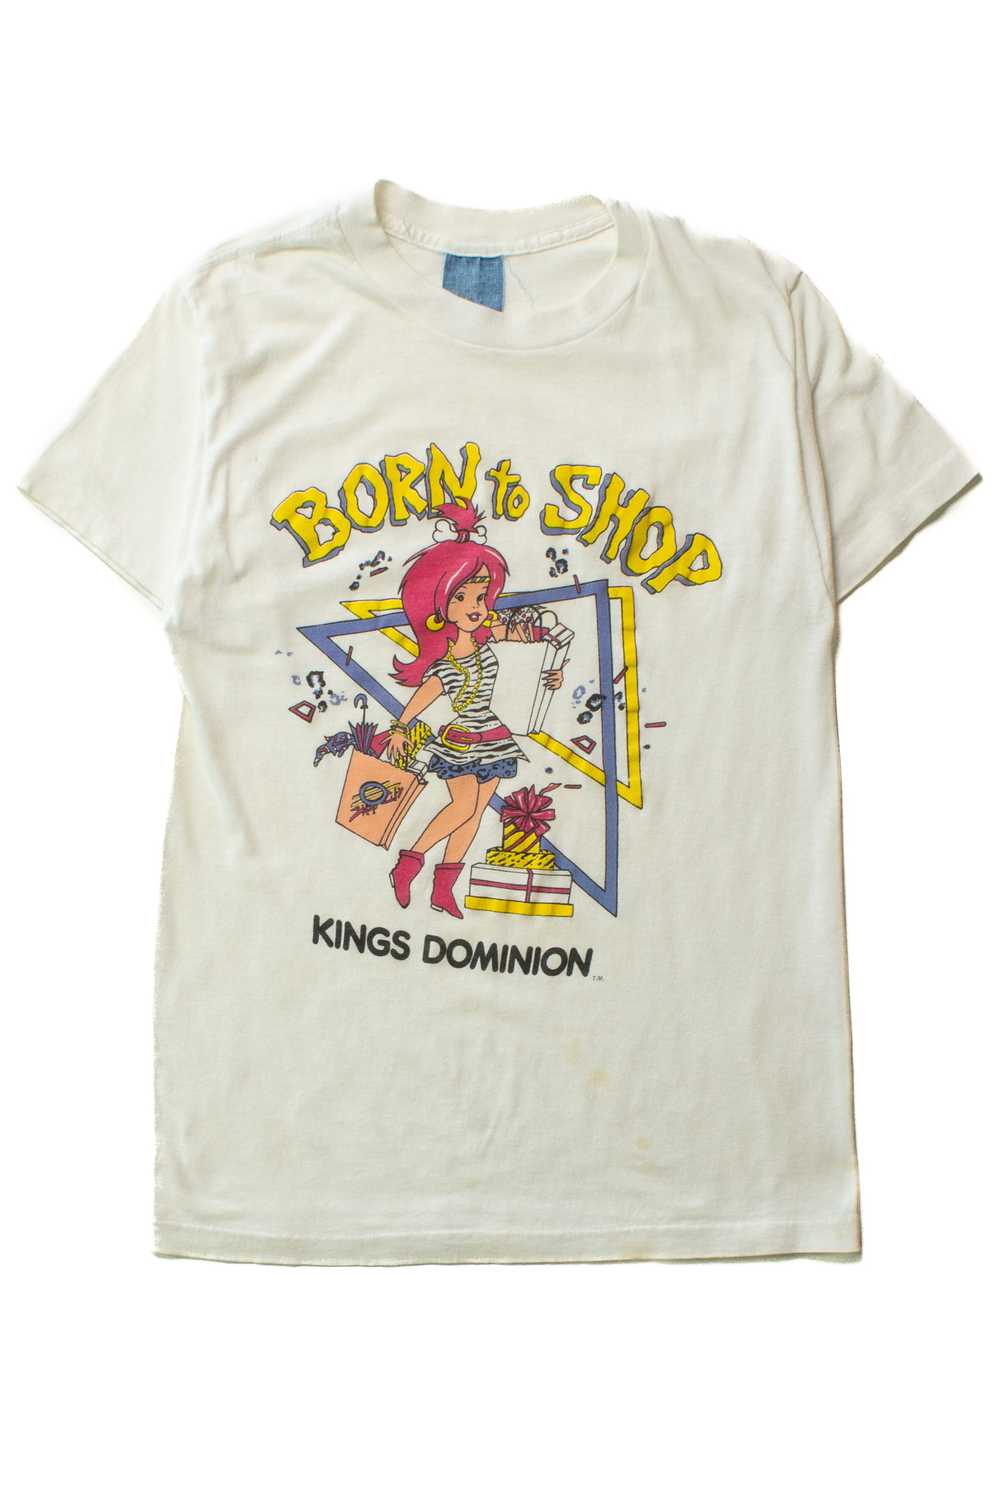 Vintage Born To Shop T-Shirt (1980s) - image 1